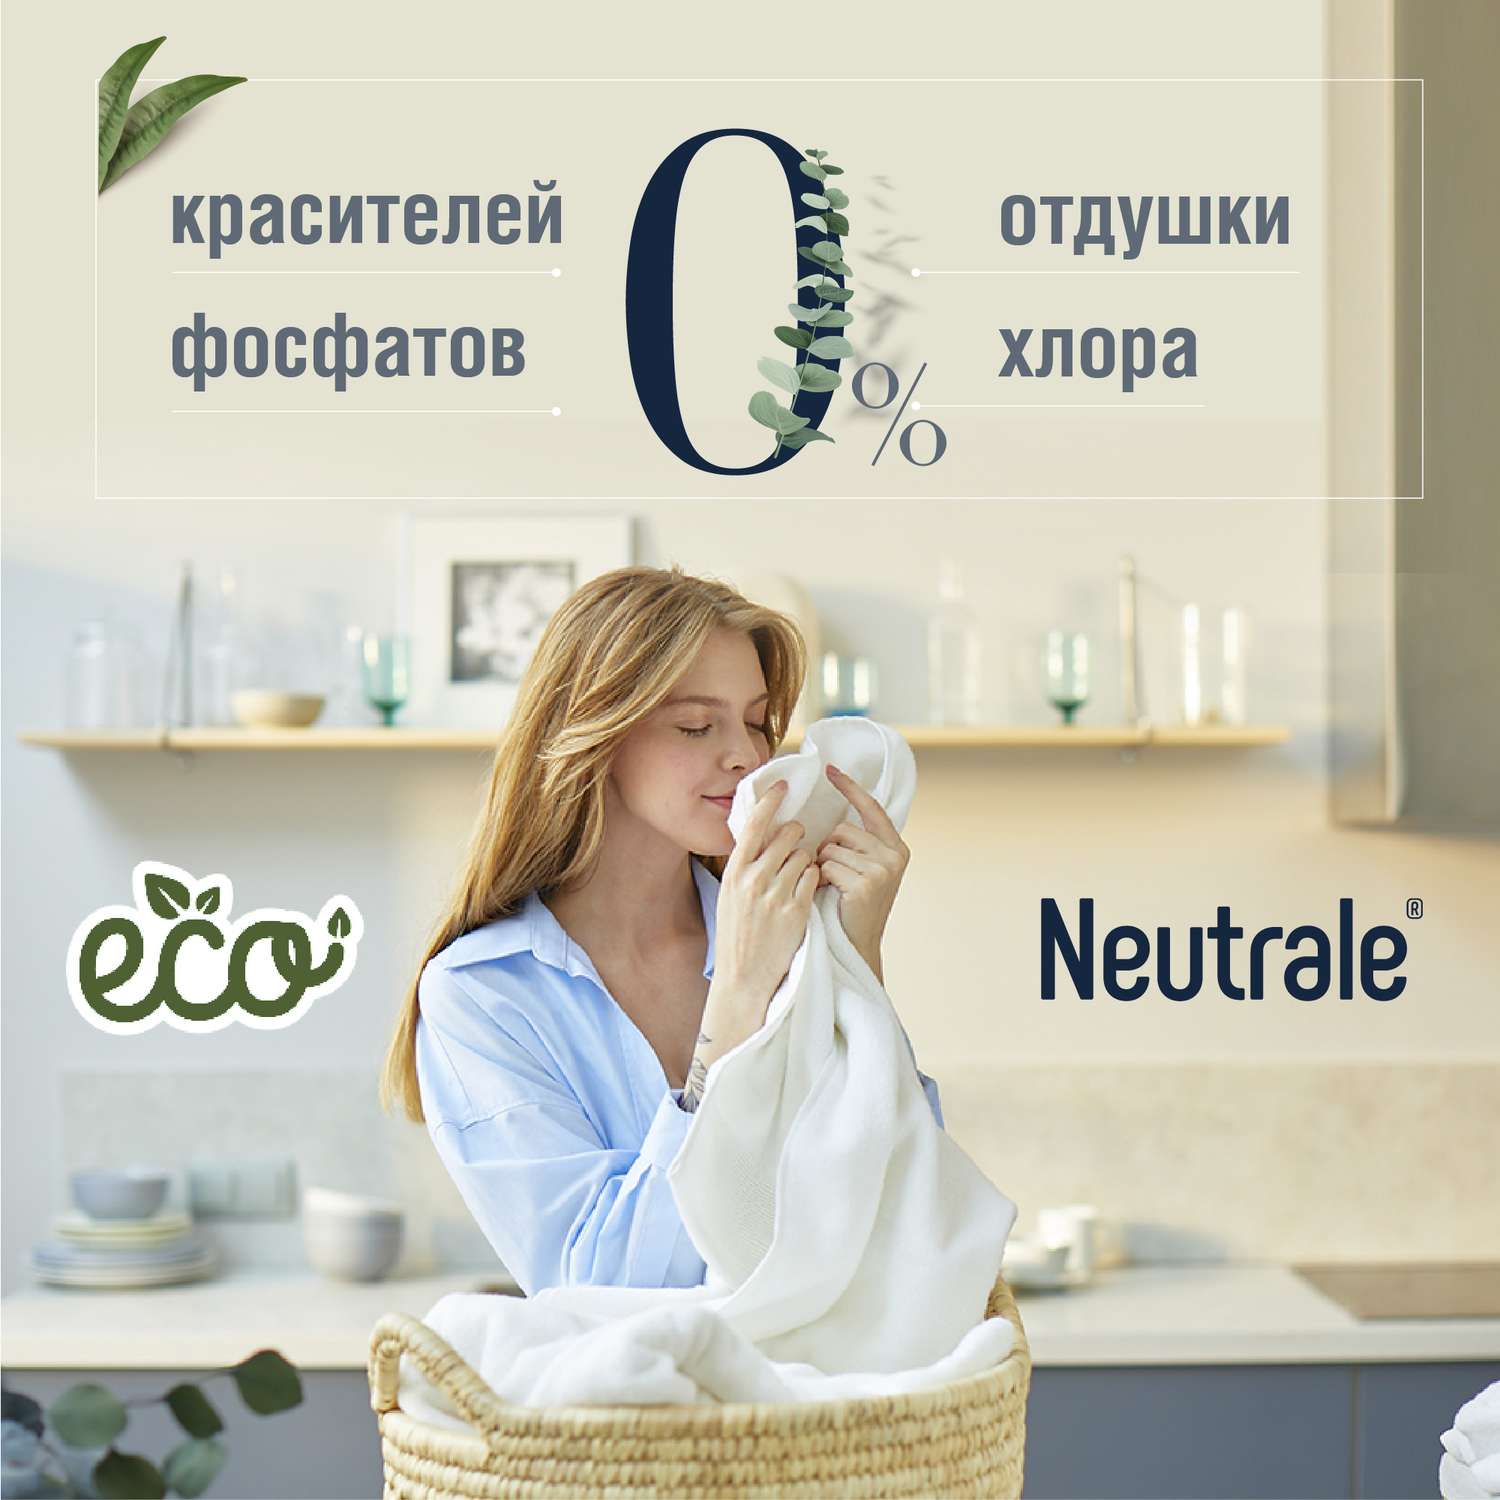 Гель для стирки Neutrale для детской одежды гипоаллергенный без запаха и фосфатов ЭКО 950мл - фото 3